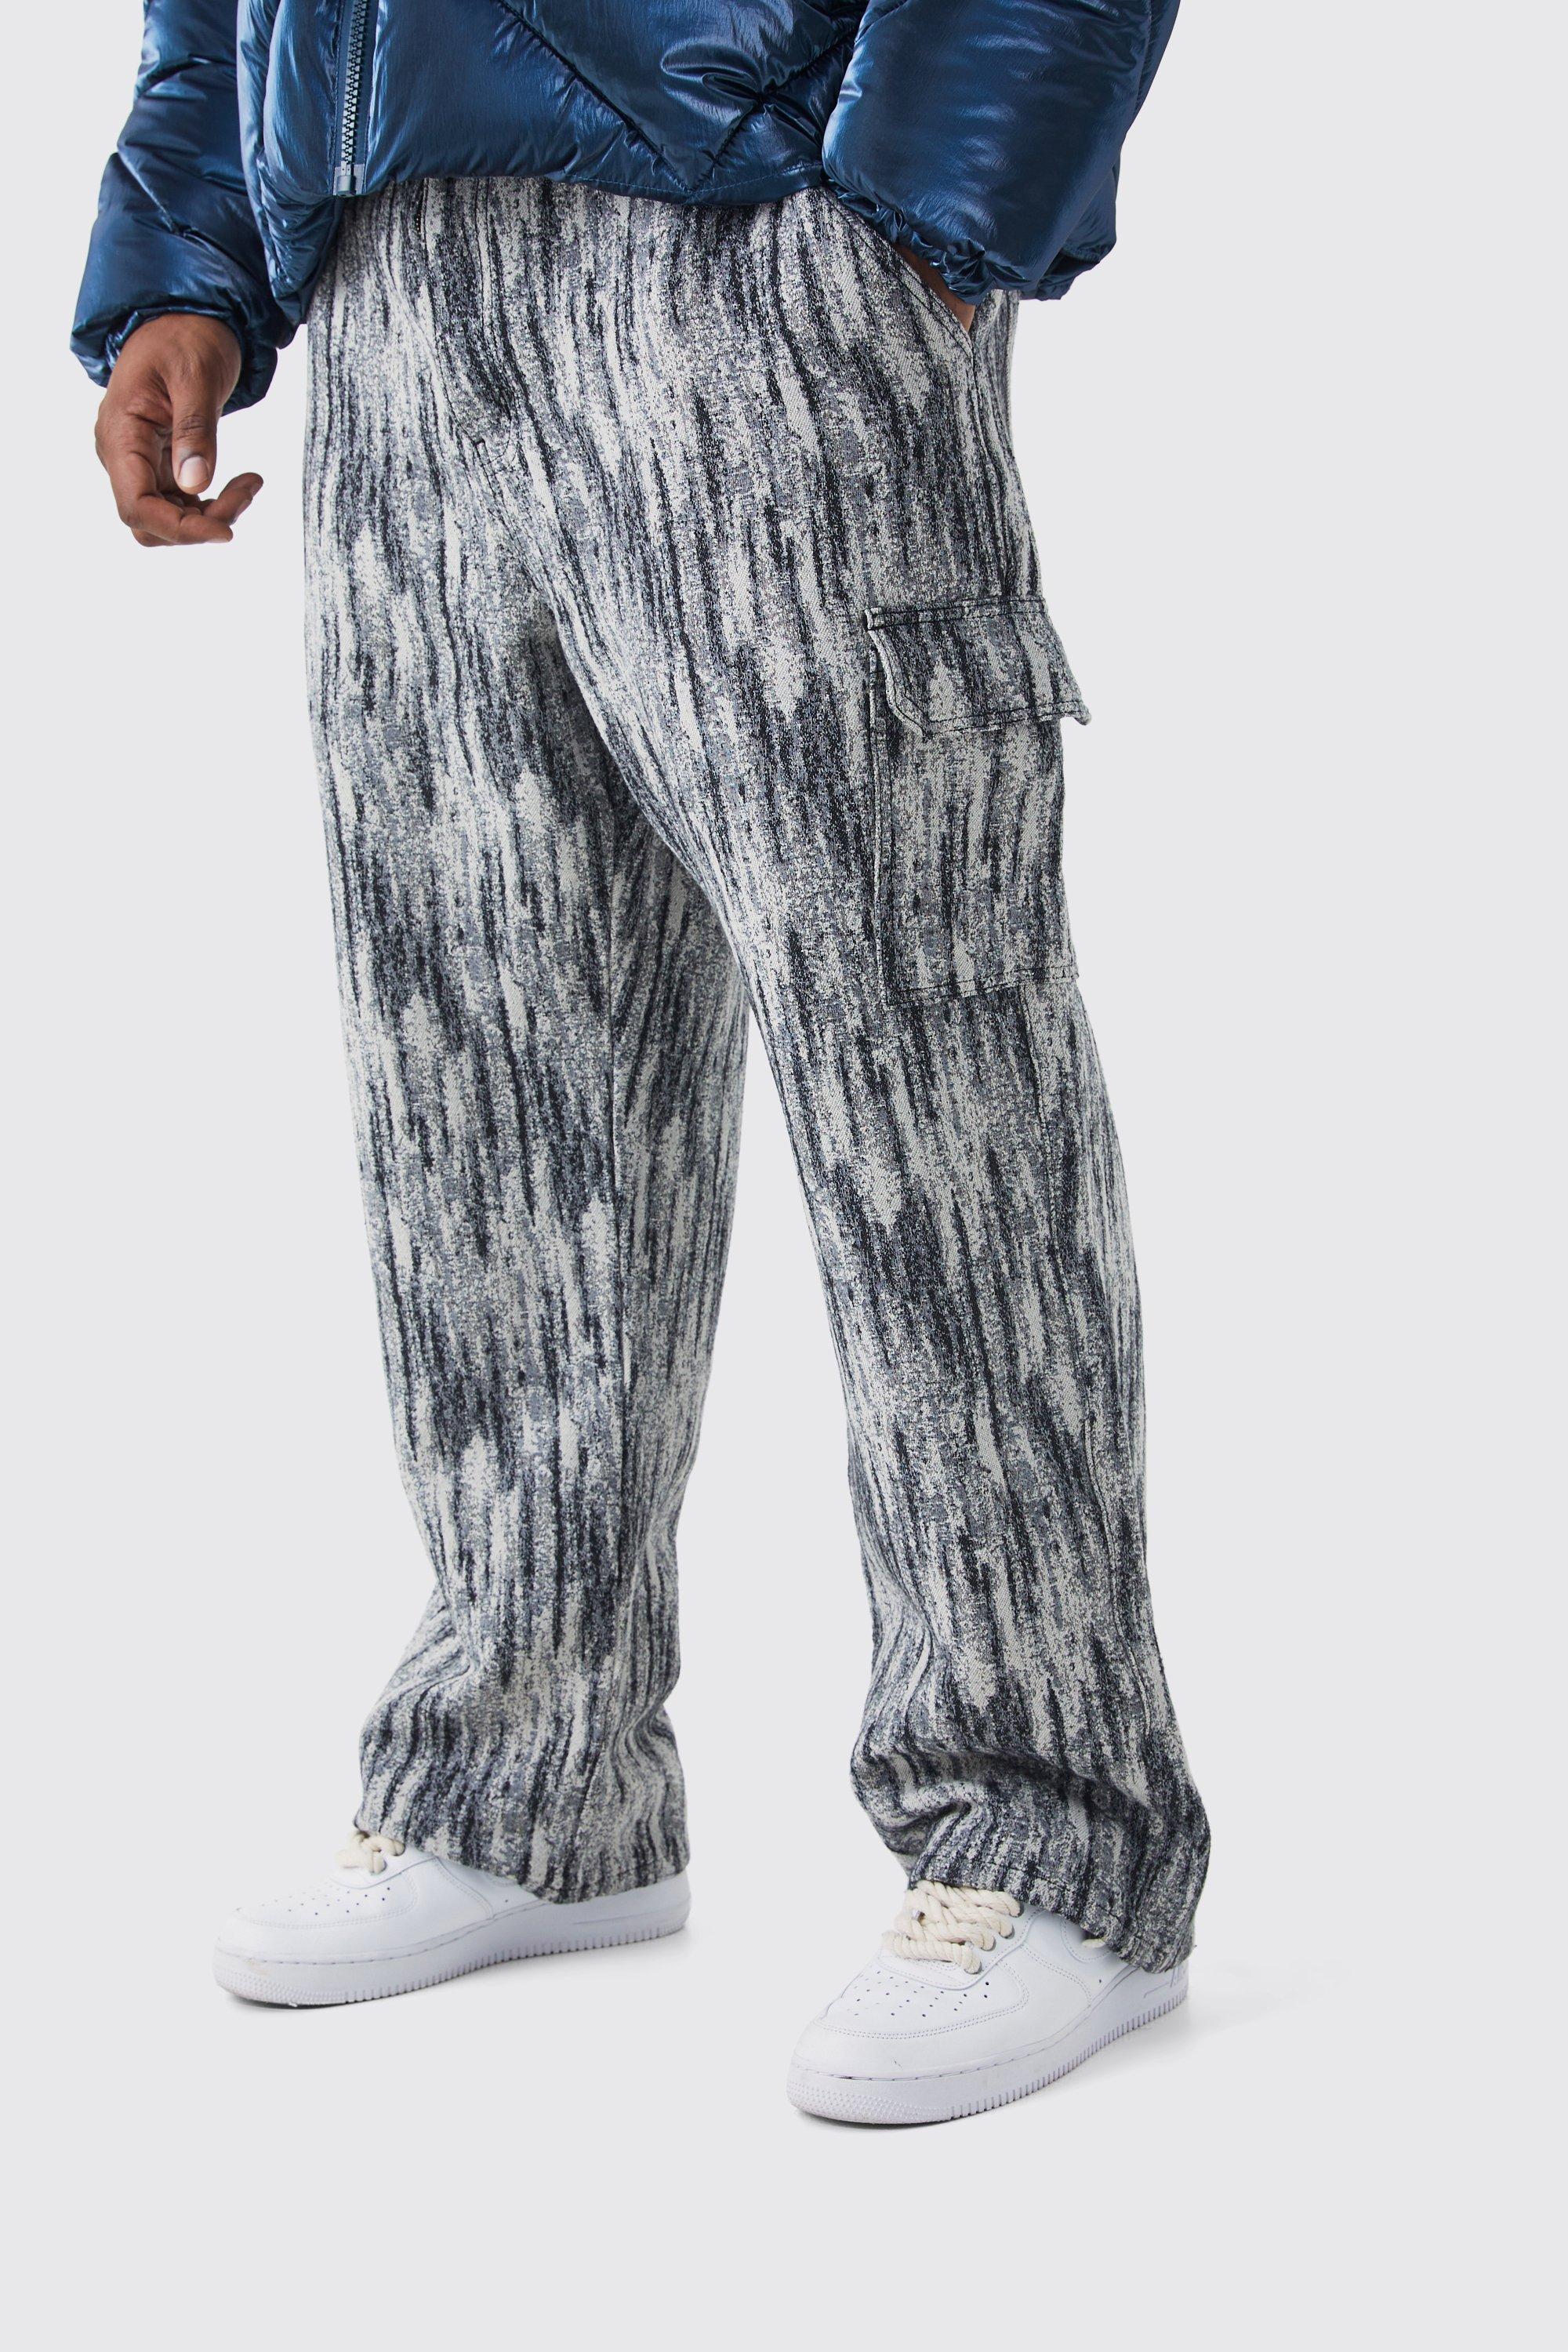 grande taille - pantalon cargo à motif tapisserie homme - noir - 42, noir